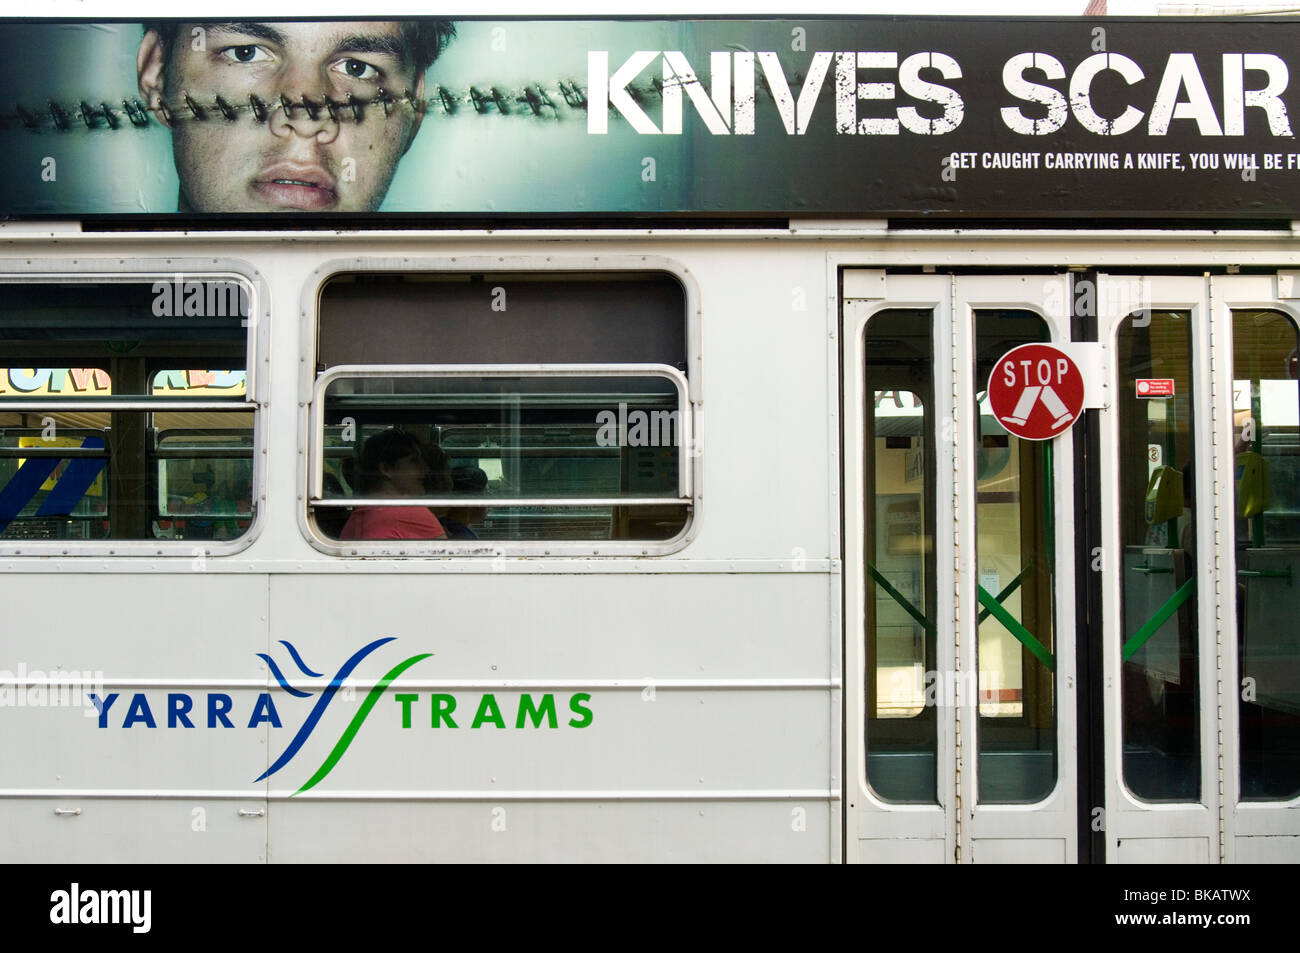 Message de campagne vie cicatrice couteaux affiché sur un tramway, Melbourne, Australie Banque D'Images